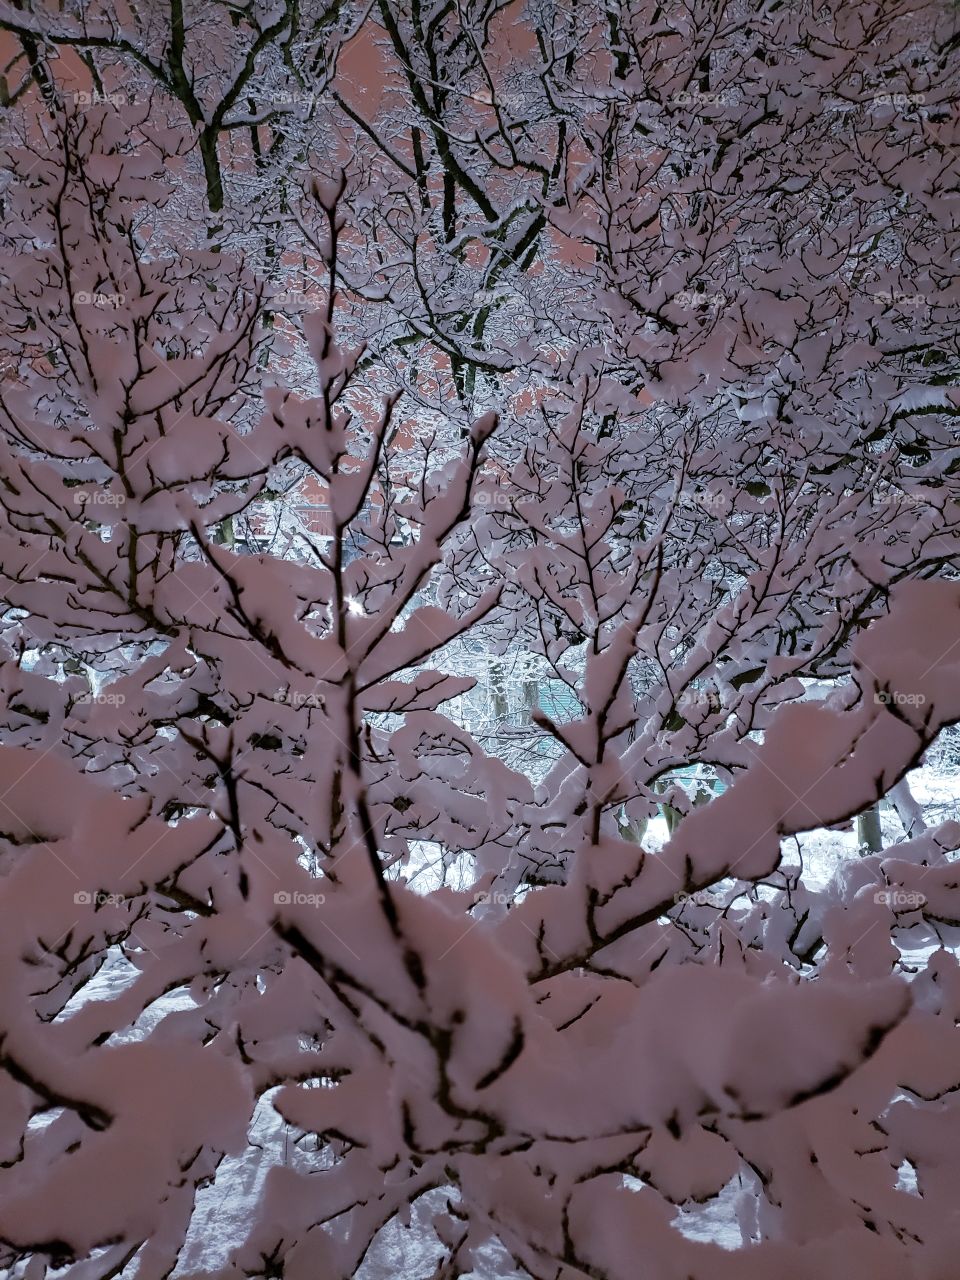 snowfall on tree